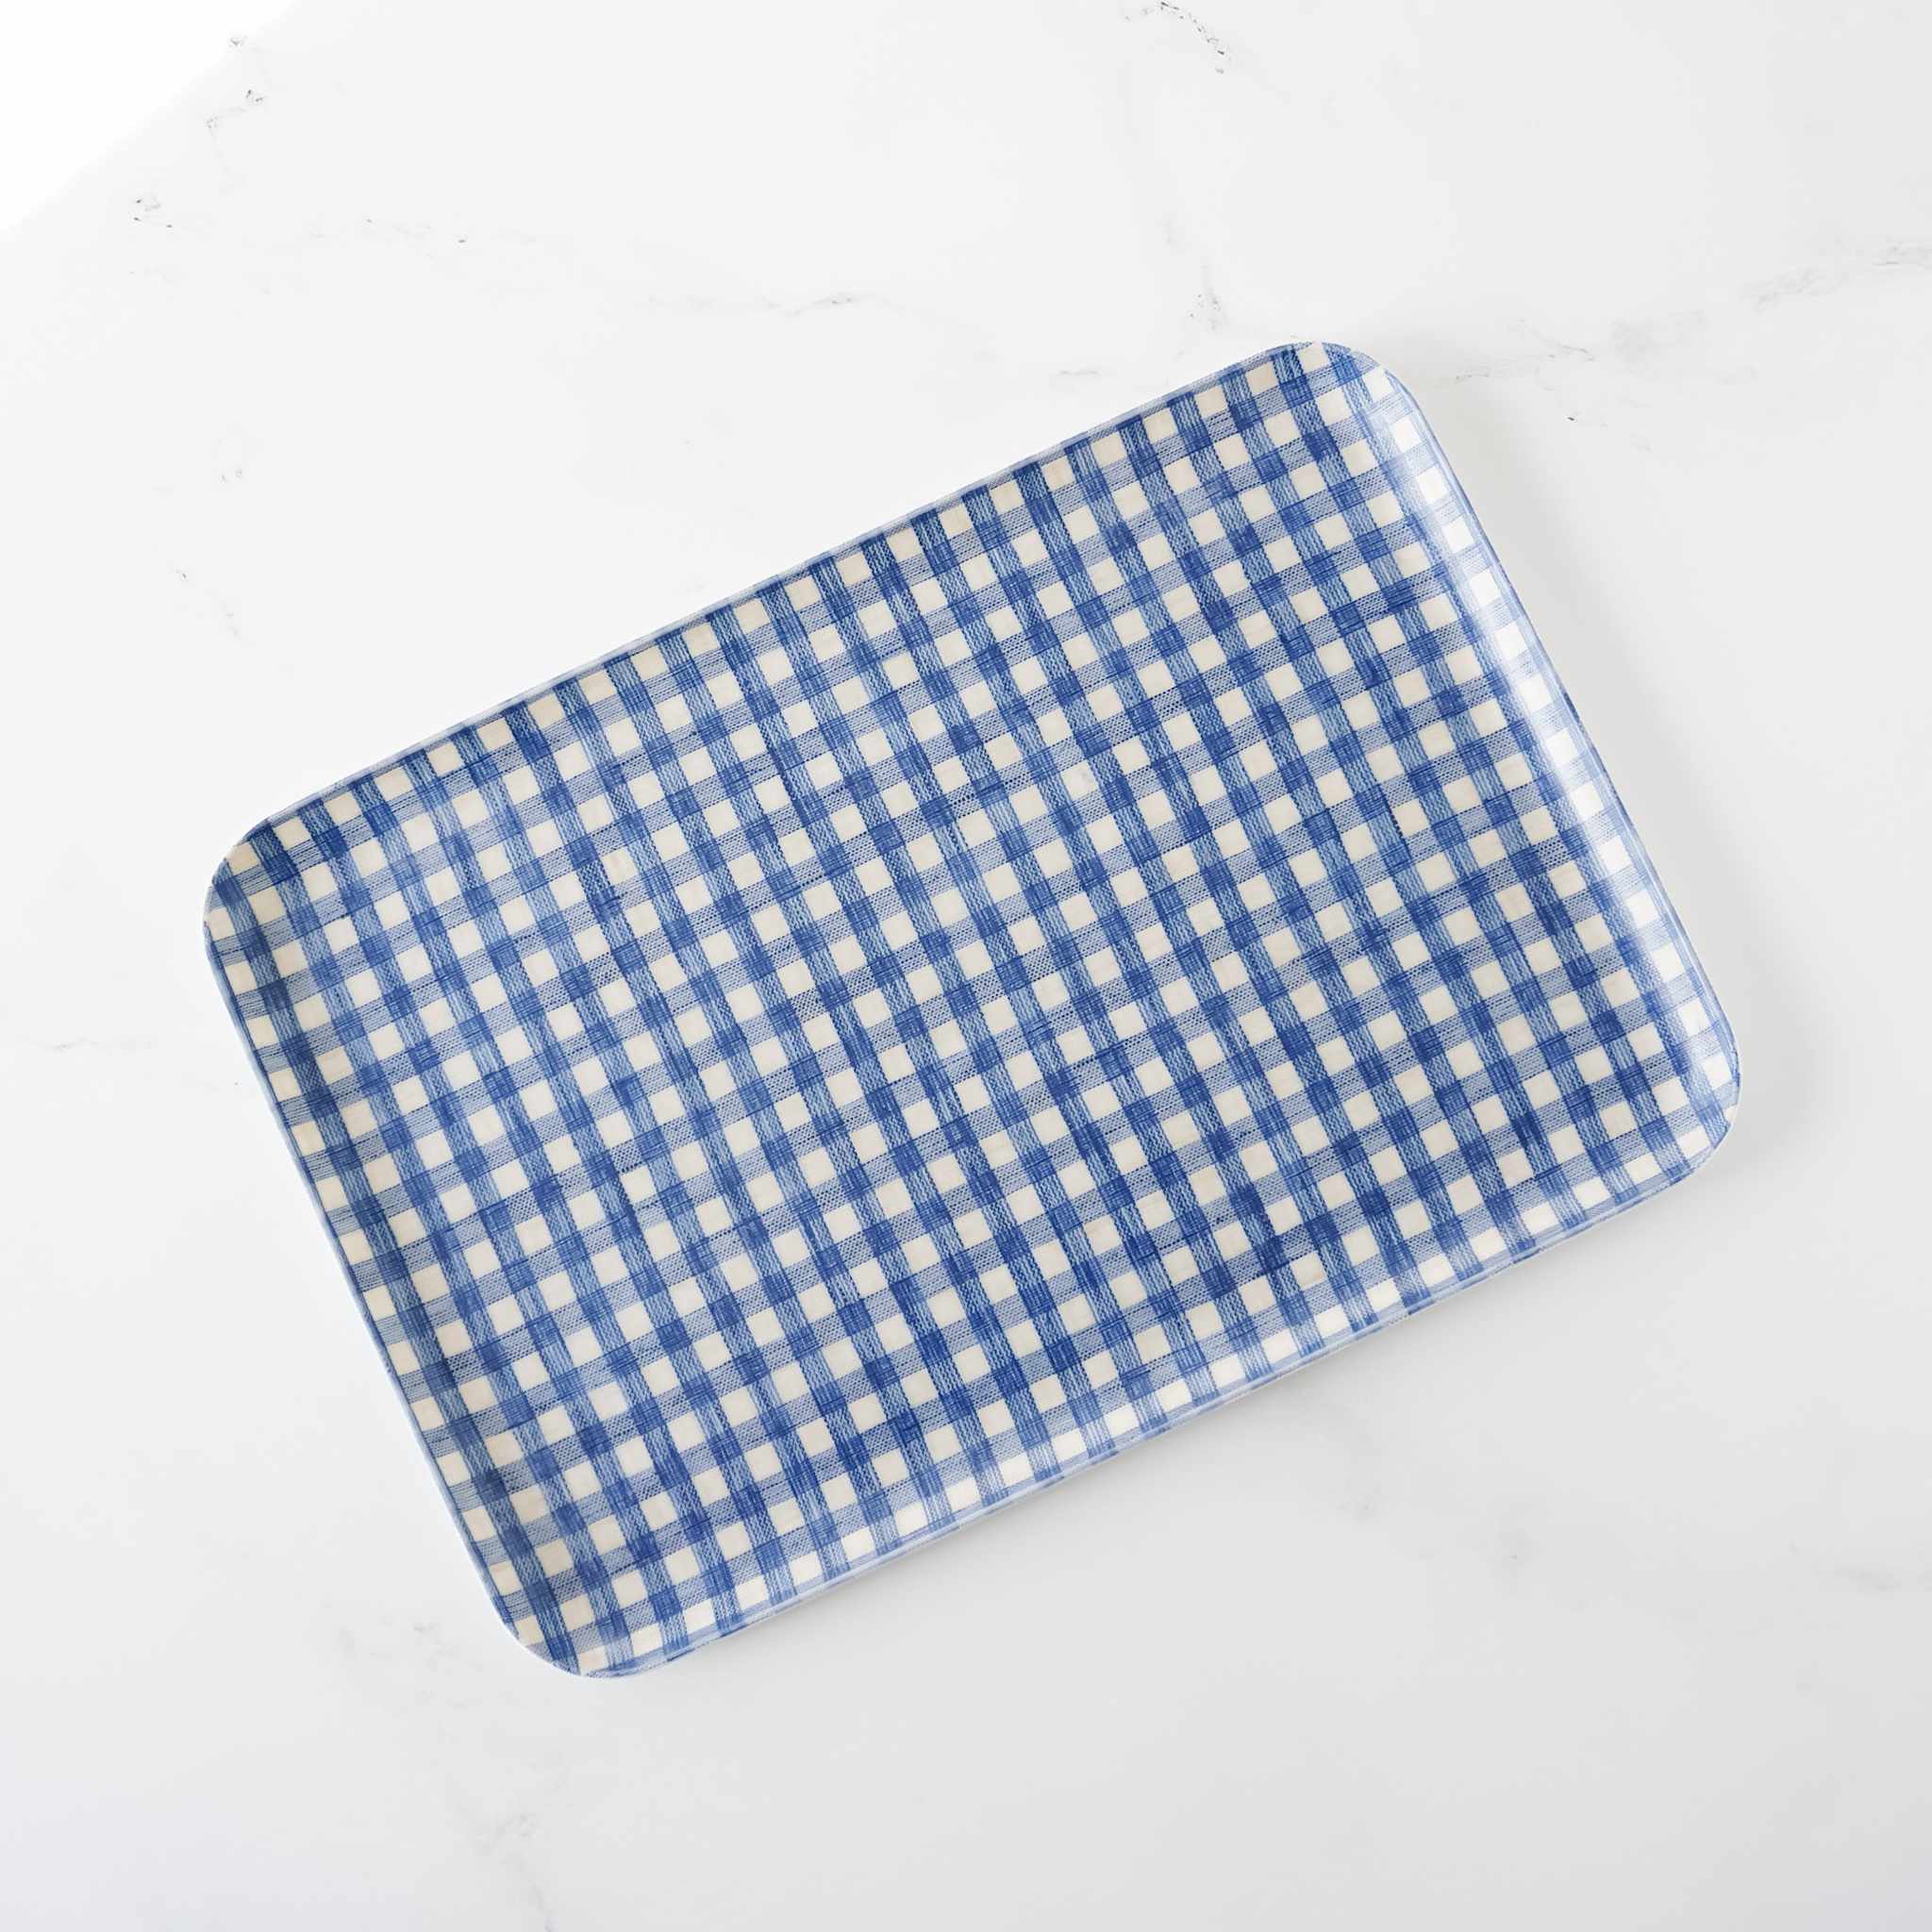 blue gingham linen tray in medium